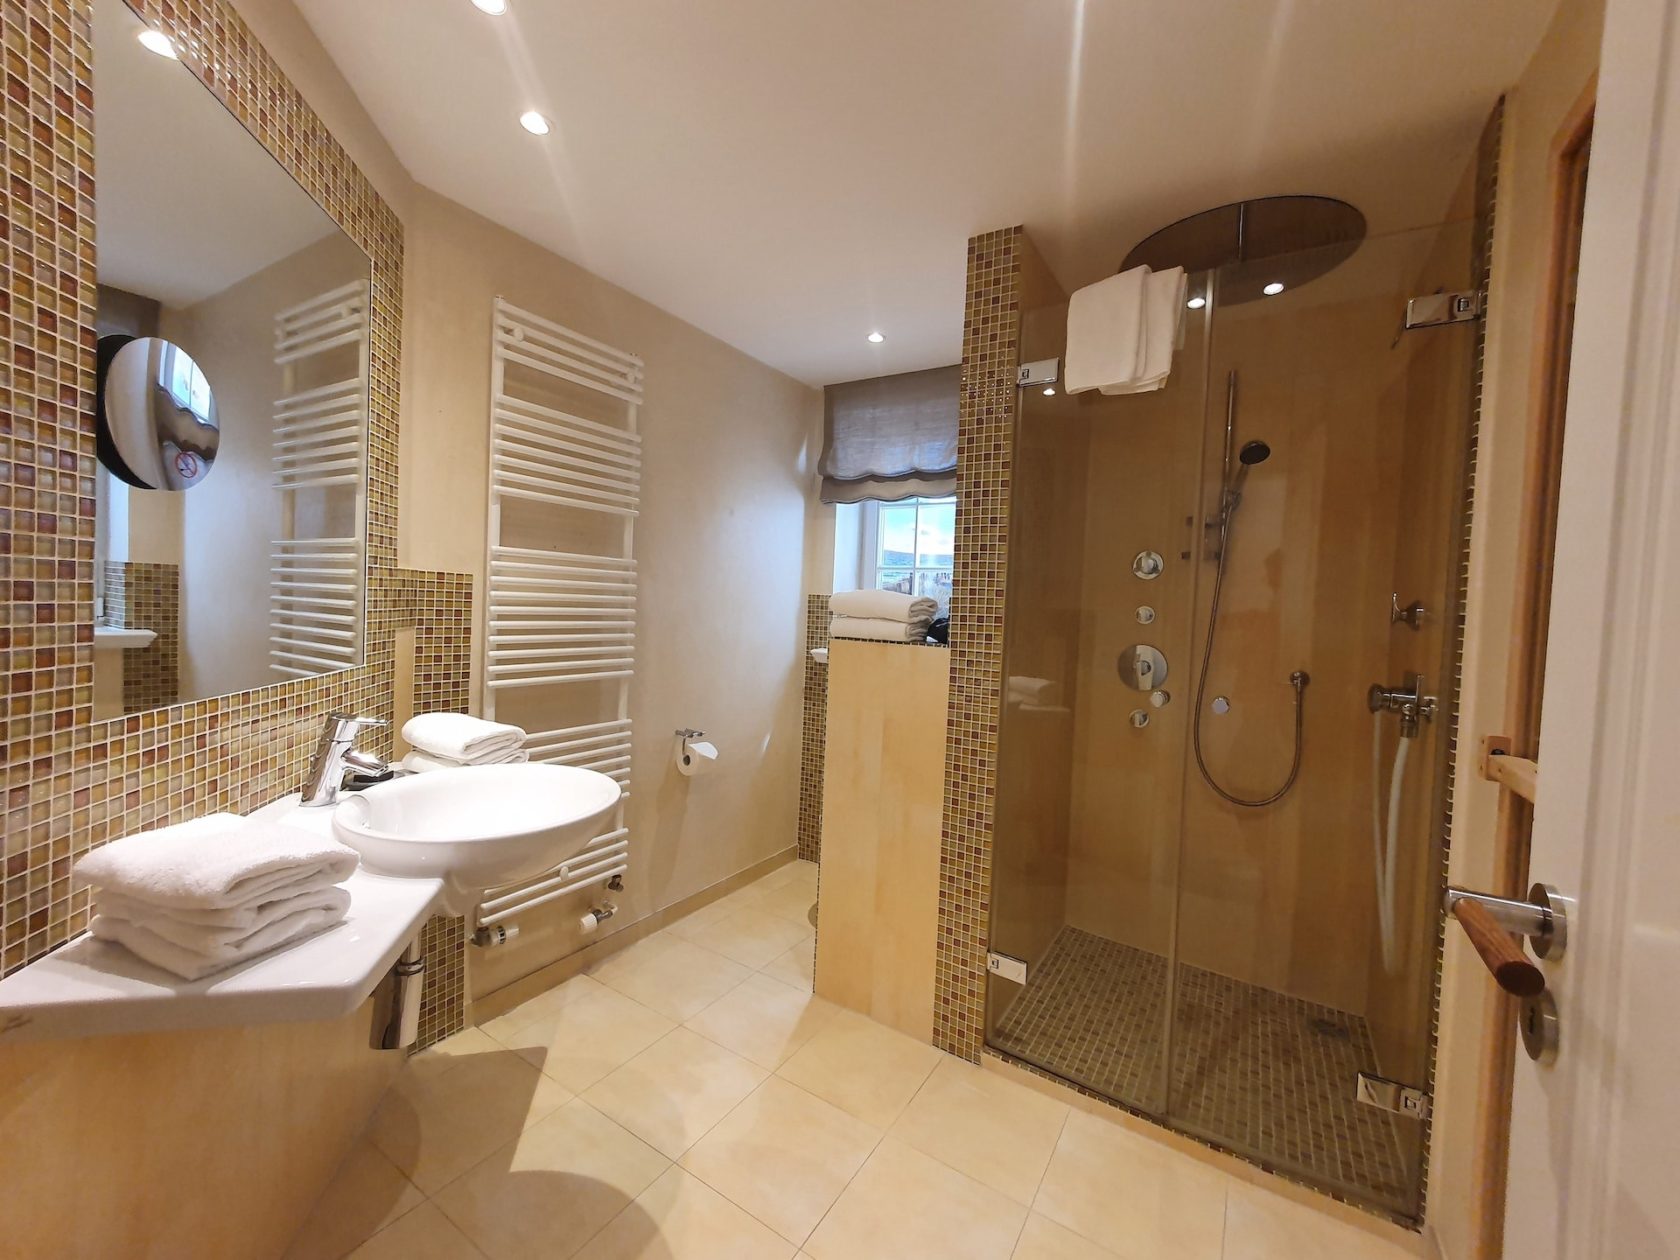 Badezimmer mit Dusche im Ferienhaus in Rantum auf Sylt "Haus Rantum Royal"